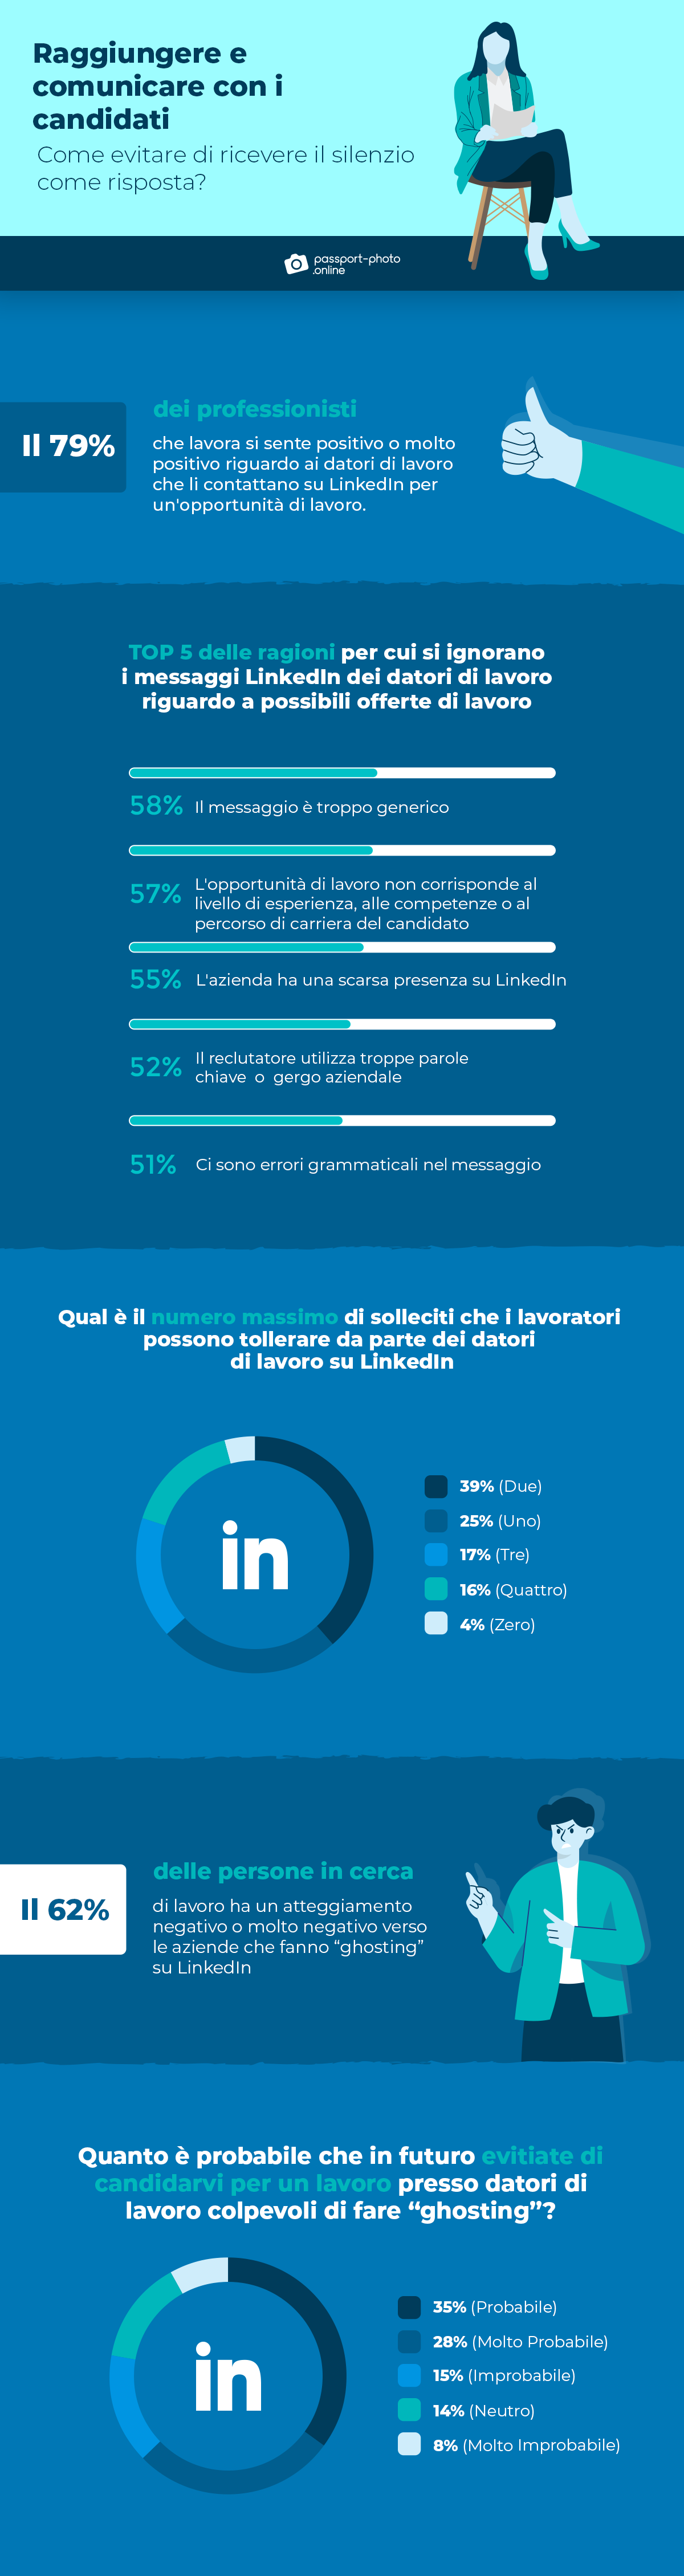 sensibilizazzione e comunicazione dei candidati su LinkedIn